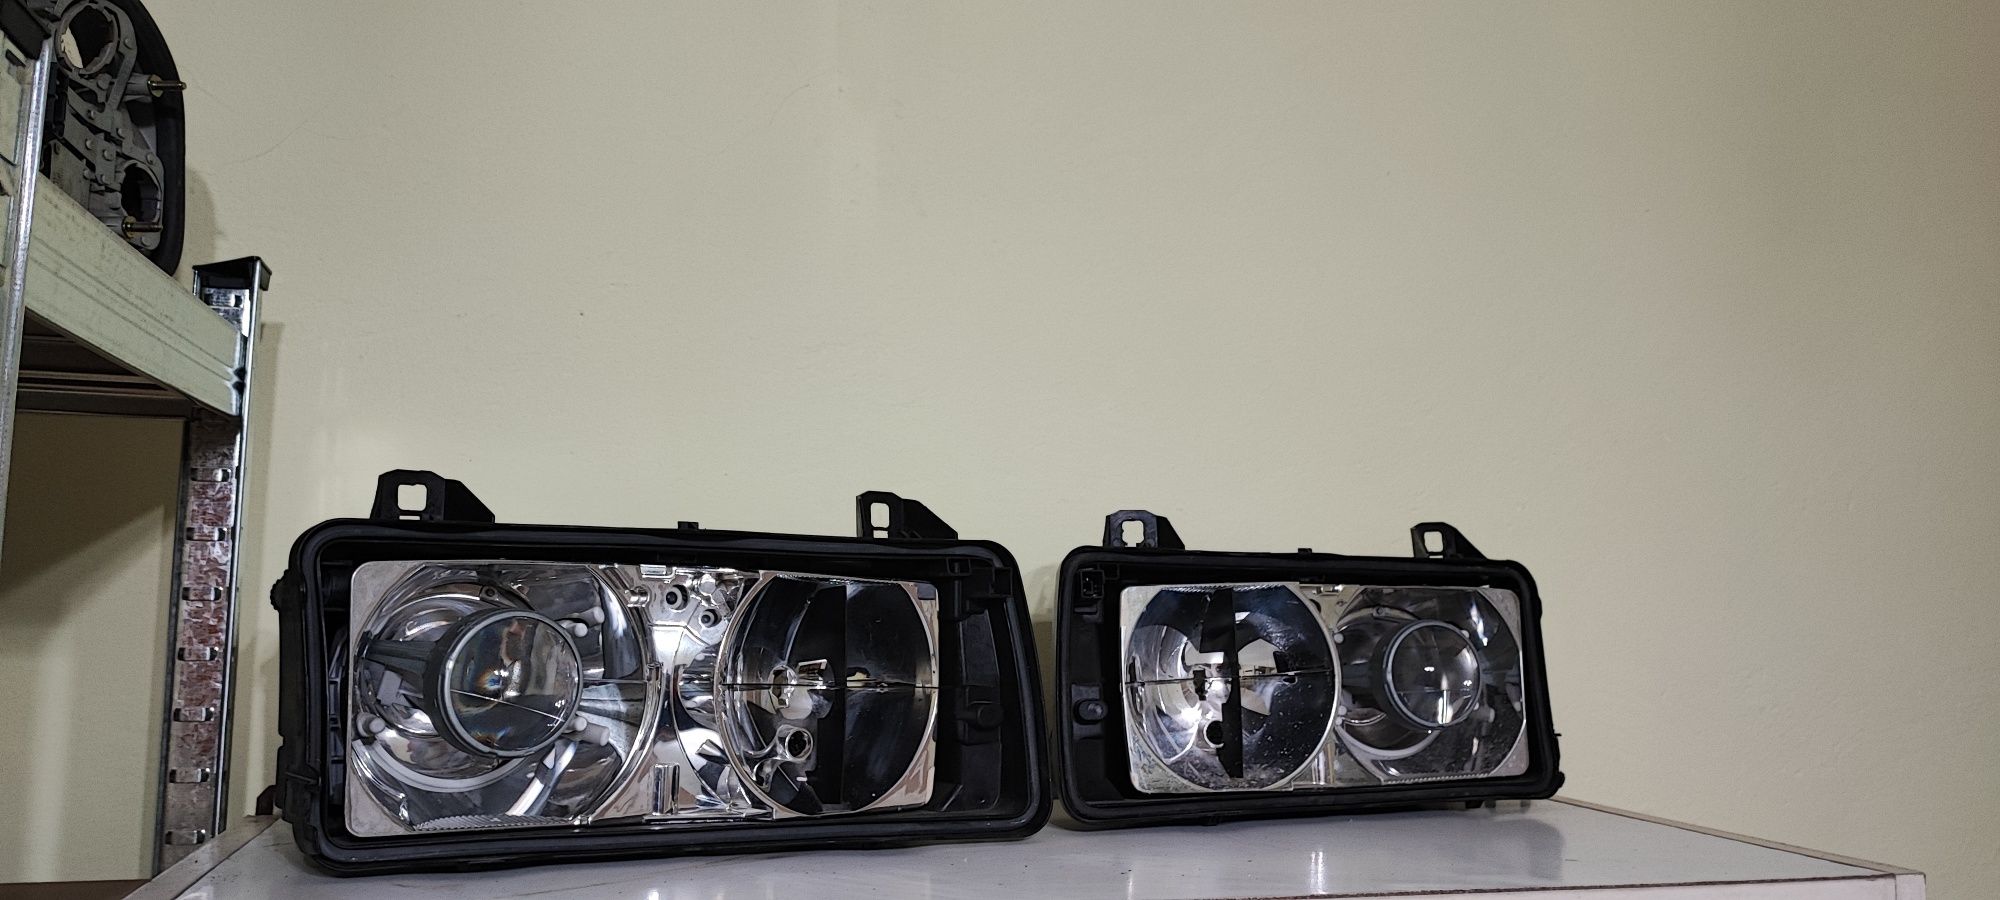 BMW E36 Soczewka BOSCH Krzyże Lampy Reflektory Renowacja Custom okazja